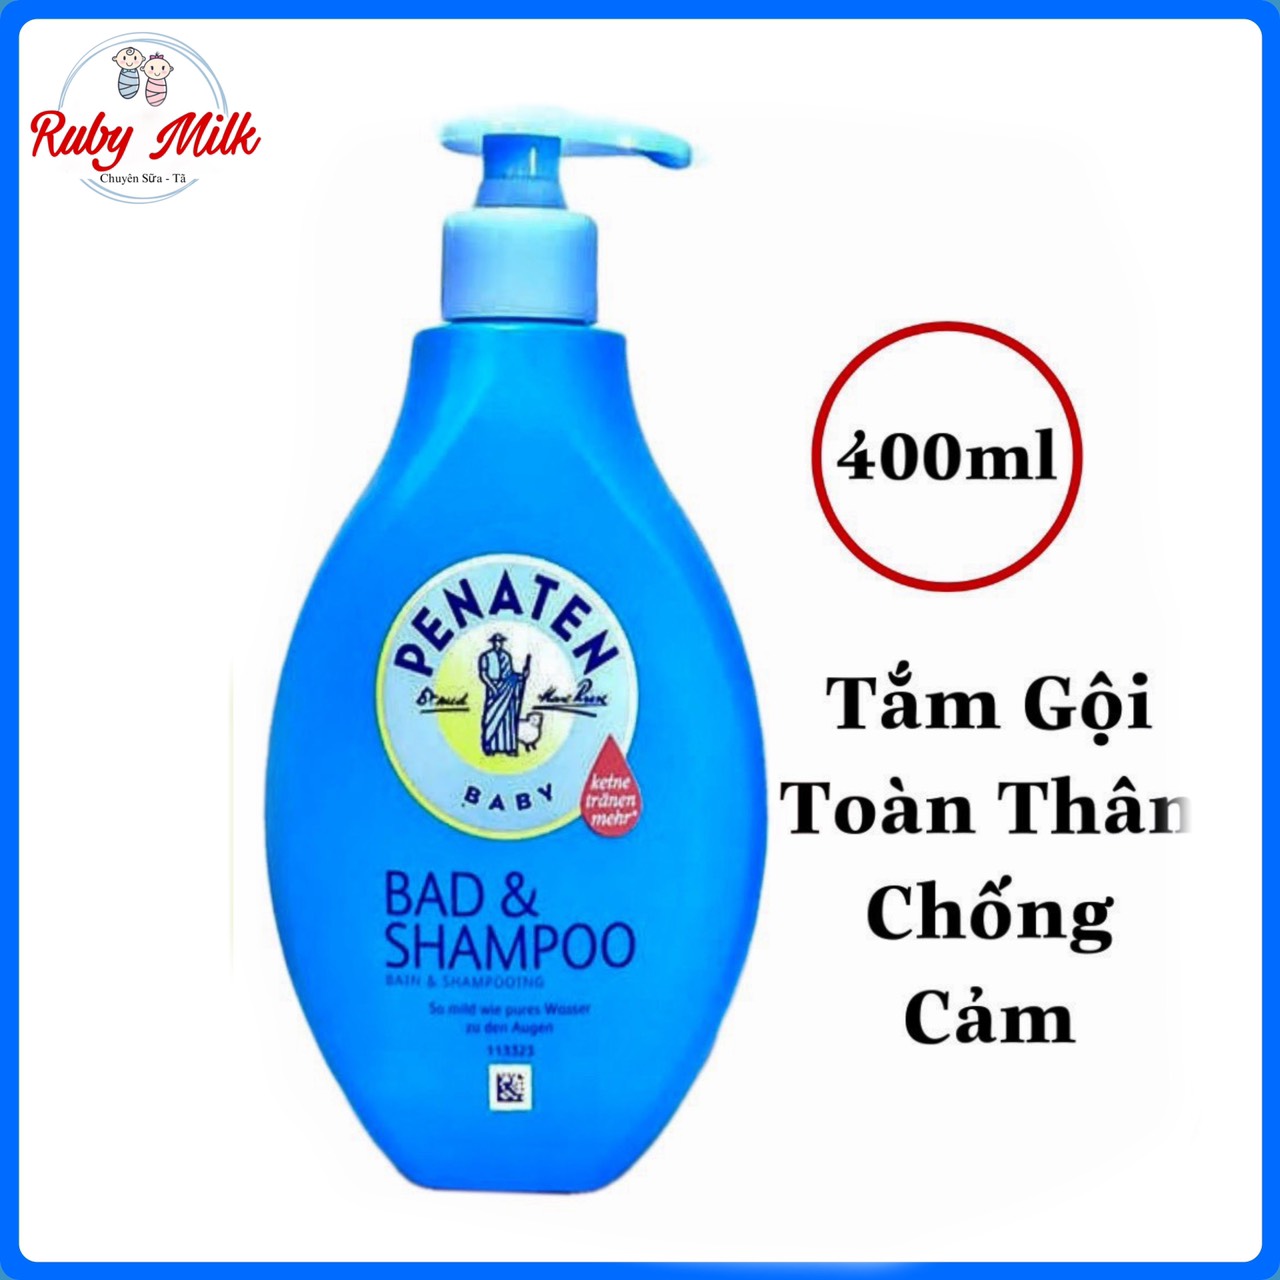 Sữa tắm gội chống cảm Penaten Bad & Shampoo 2 trong 1 cho bé chai 400ml